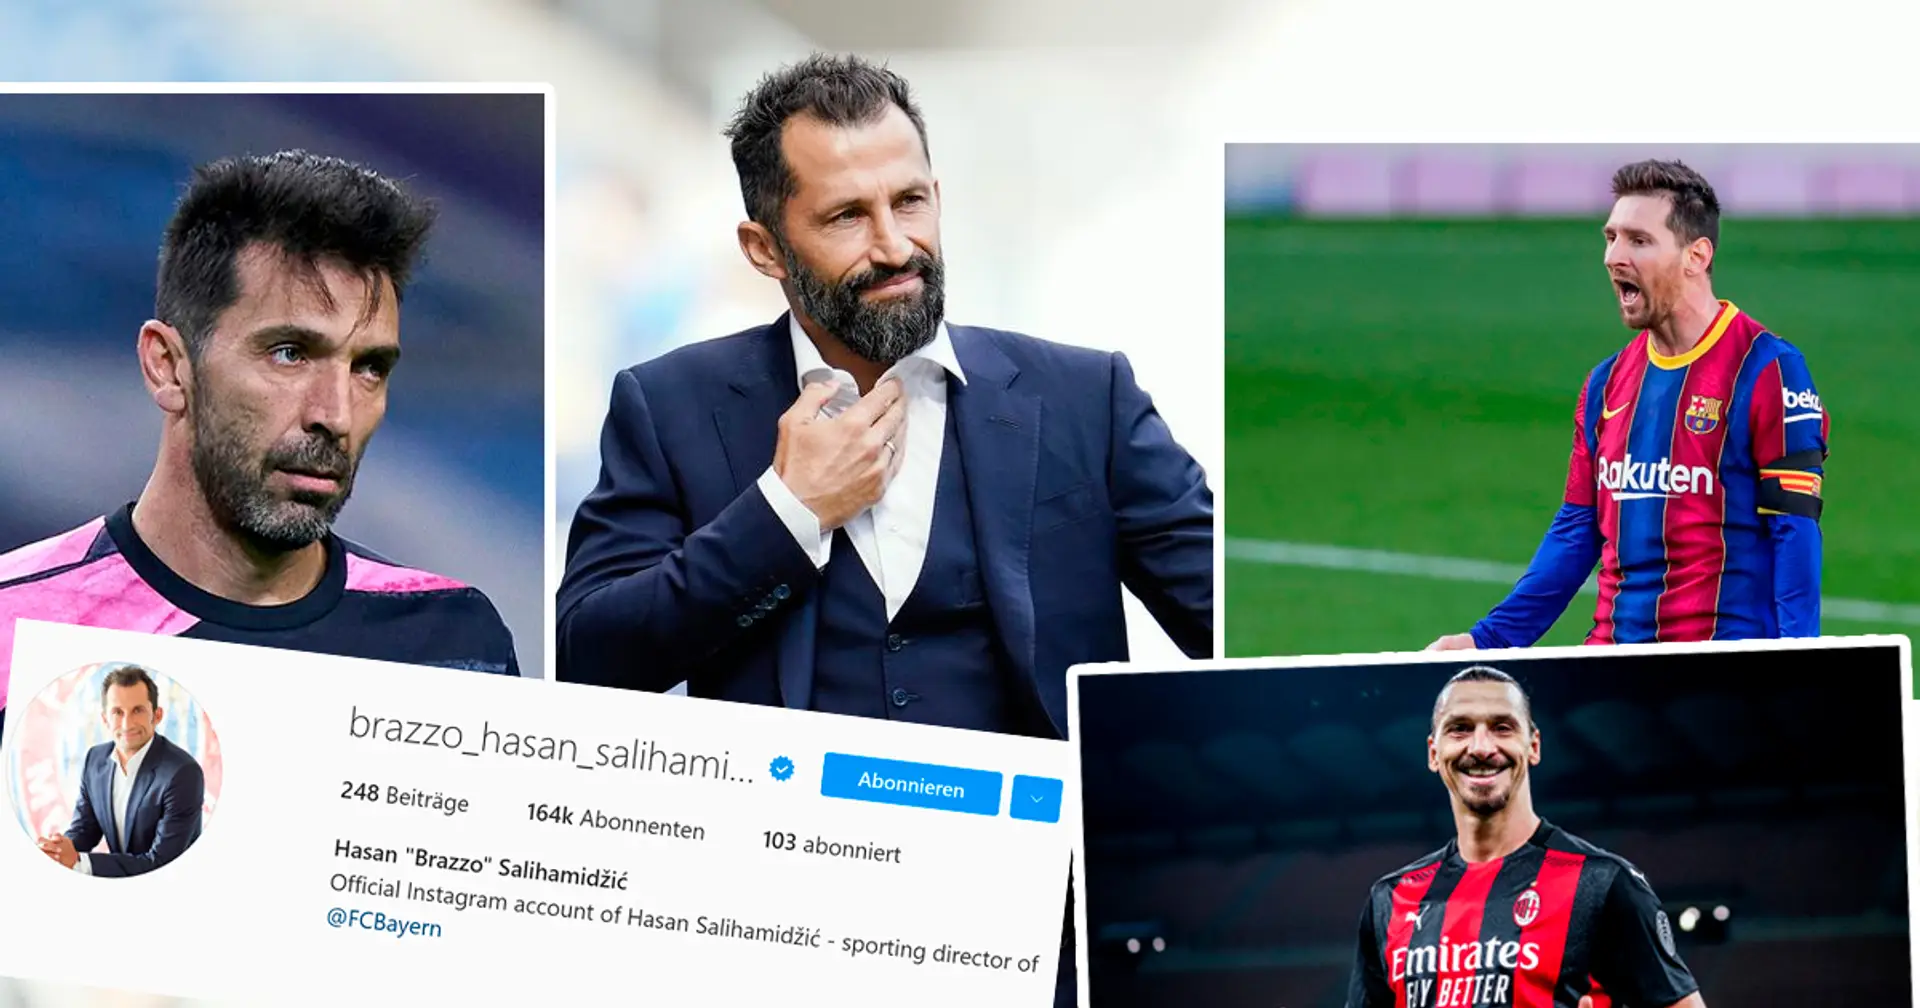 6 Nicht-Bayern-Spieler, denen Hasan Salihamidzic auf Instagram folgt - Leider keine potenziellen Neuzugänge